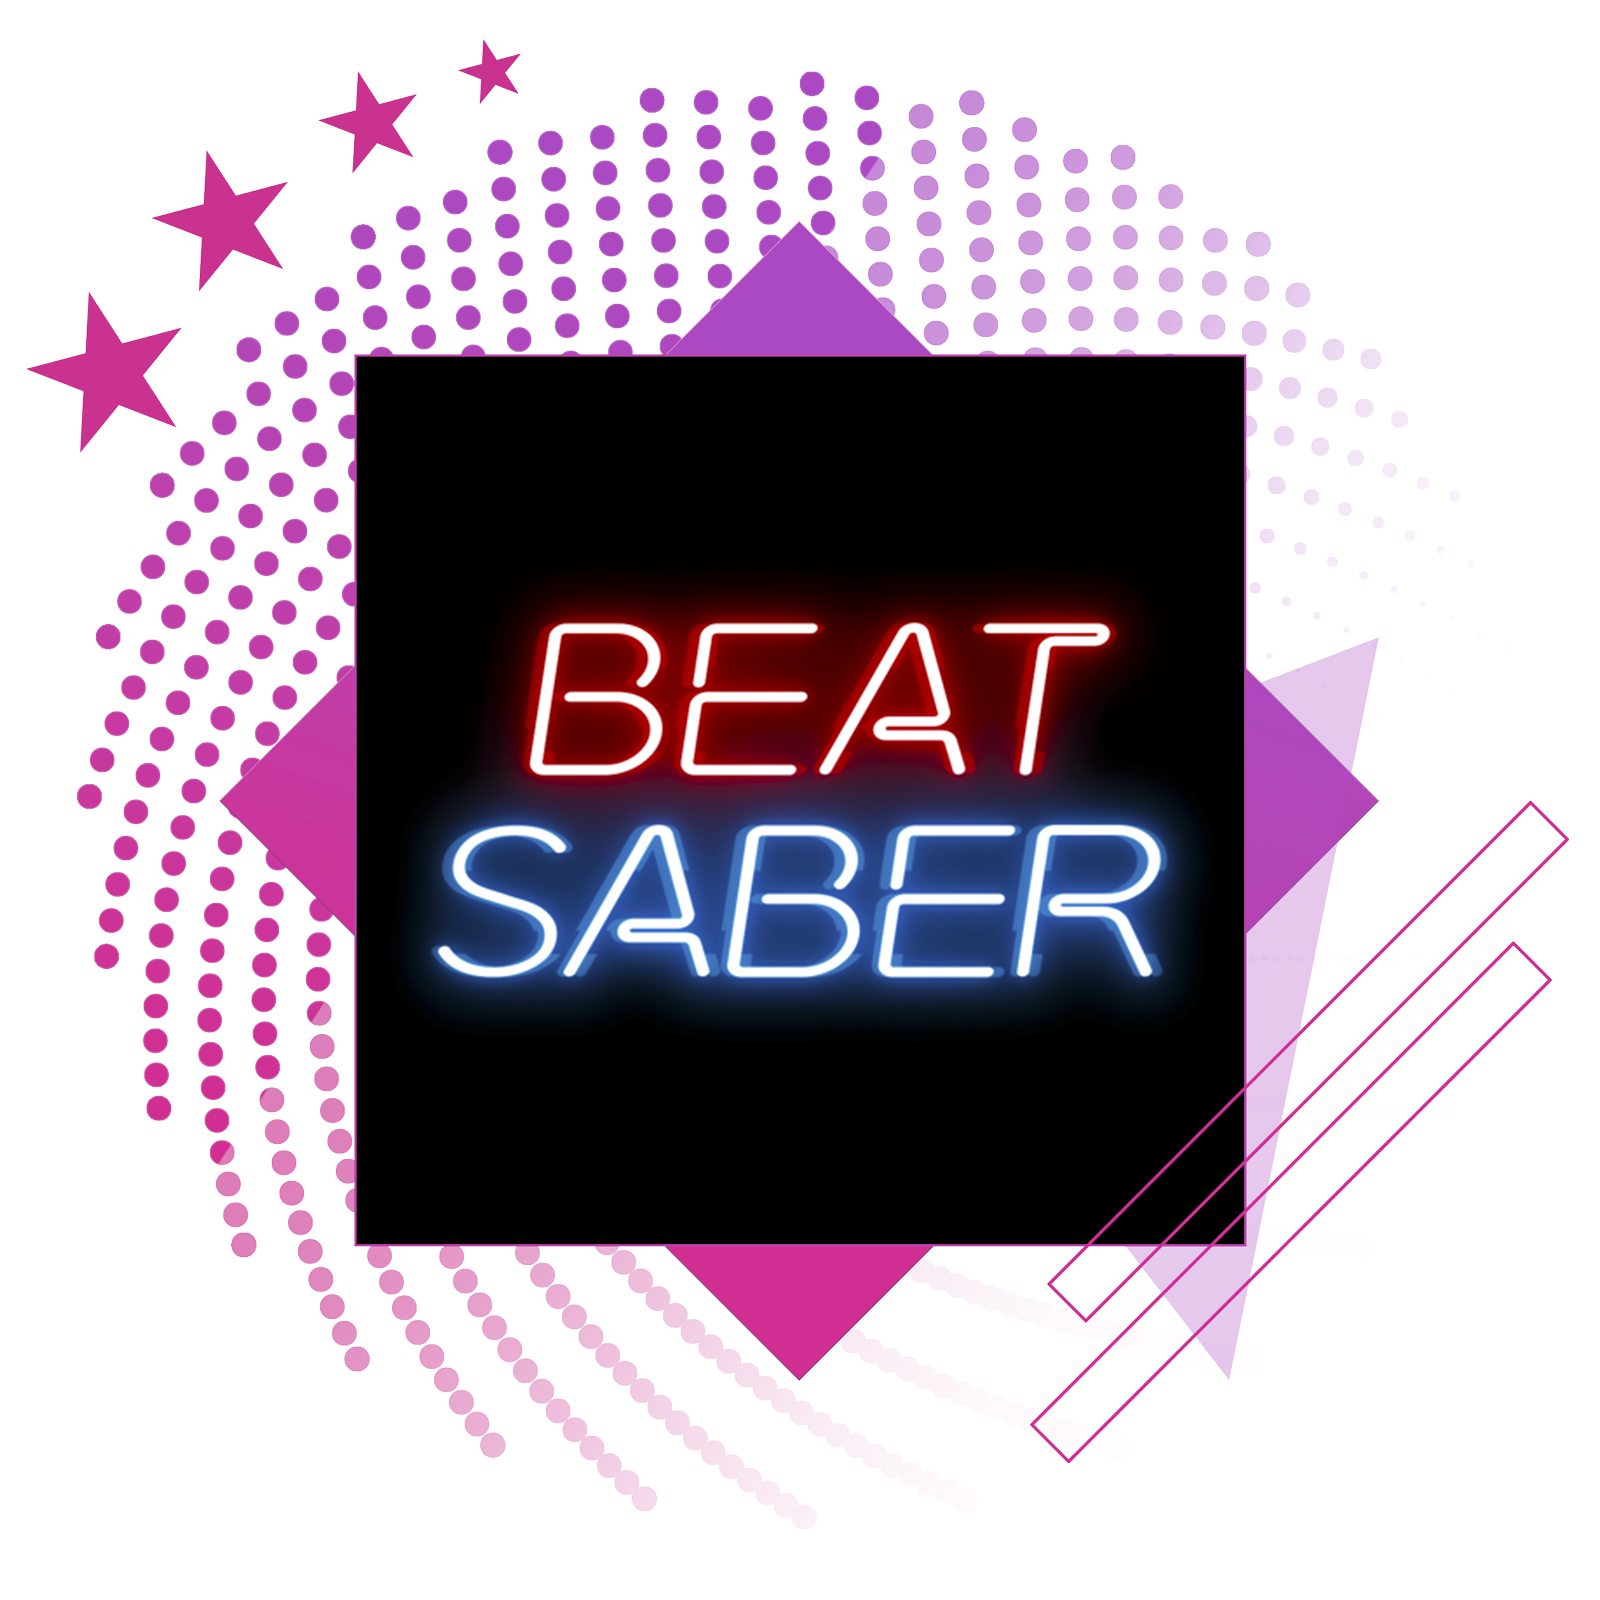 Лучшие ритмичные игры – изображение с обложкой Beat Saber.